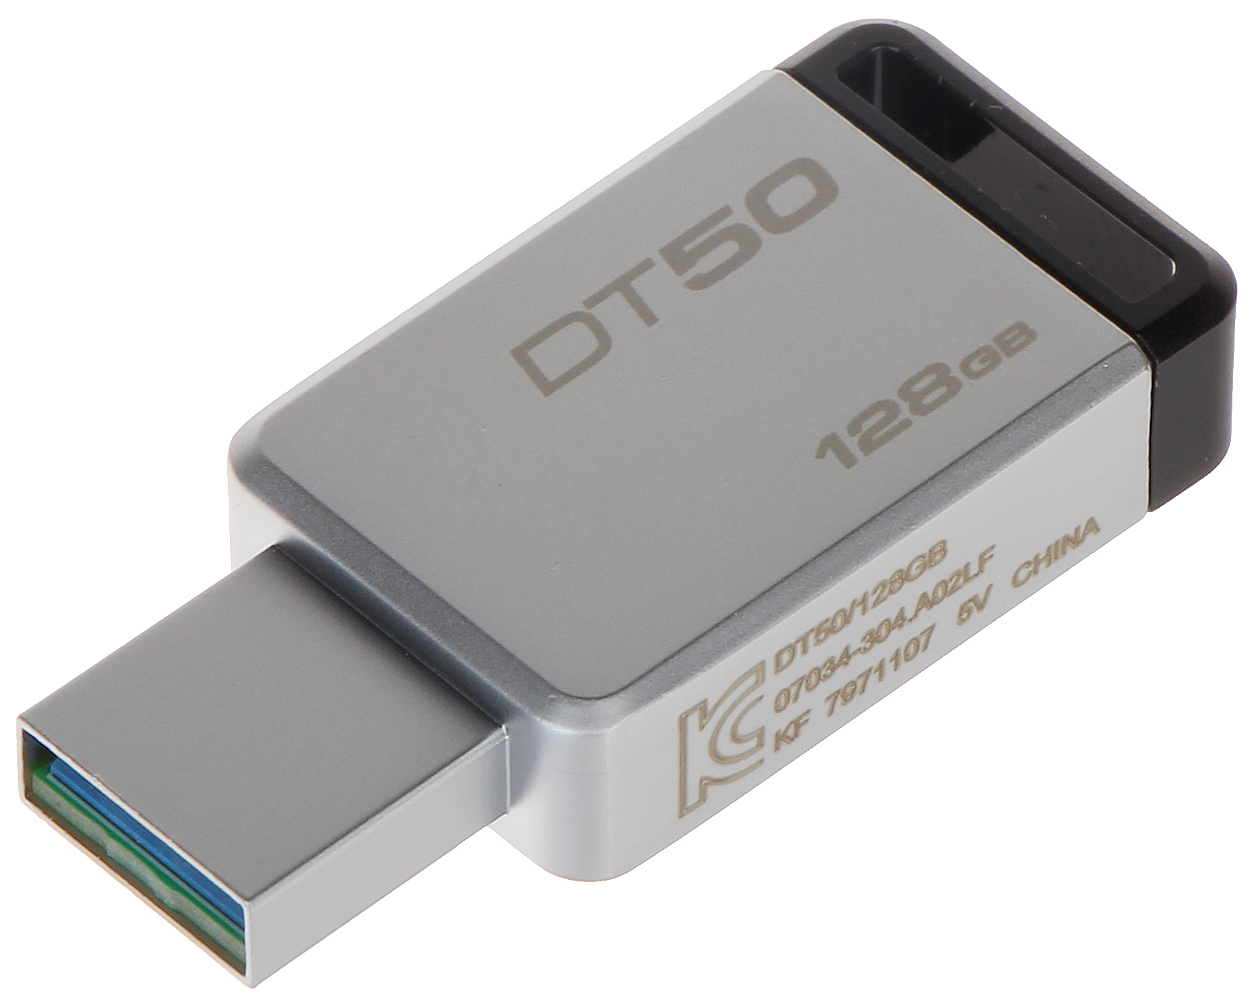 FLASH DRIVE USB 3.0 GB USB 3.1/3.... Flash Drives - Delta